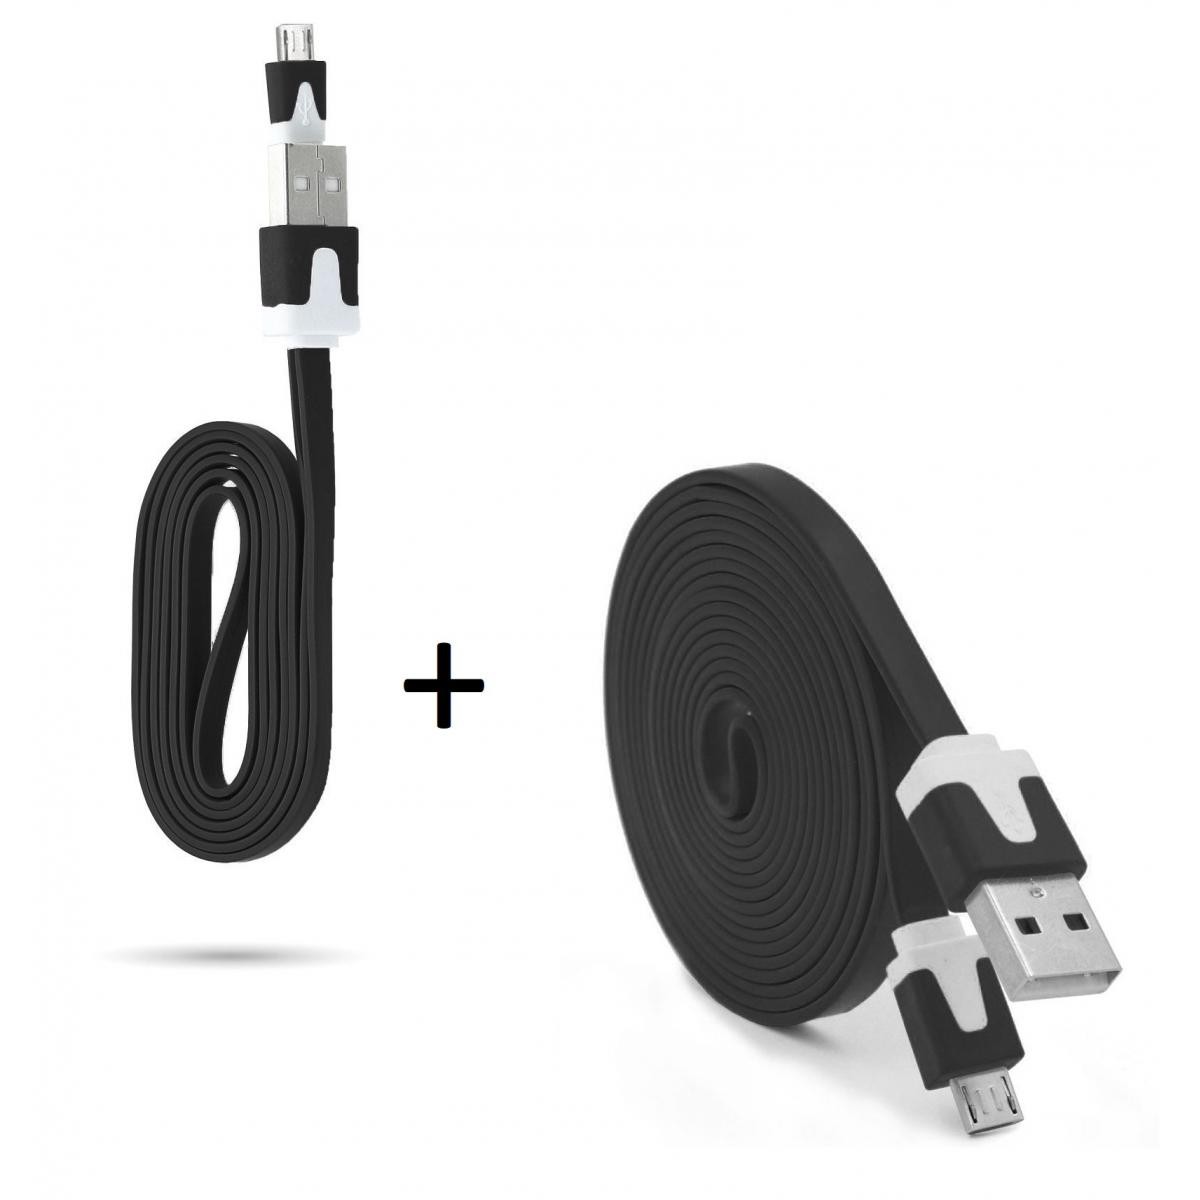 Shot - Pack Chargeur pour WIKO Y80 Smartphone Micro USB (Cable Noodle 3m + Cable Noodle 1m) Android (NOIR) - Chargeur secteur téléphone